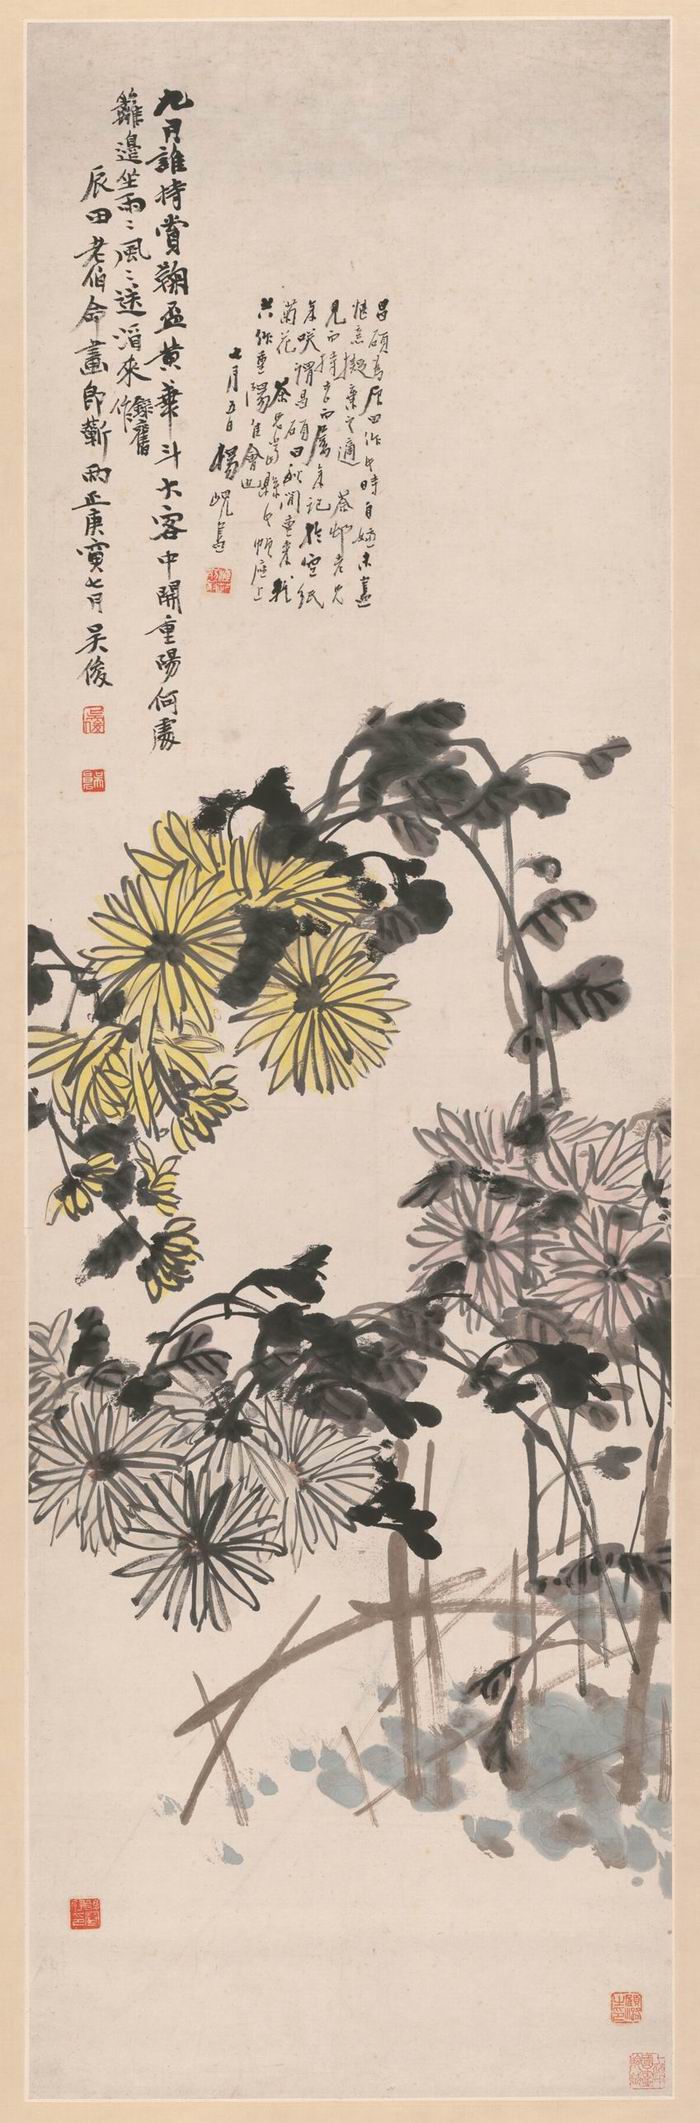 吴昌硕 重阳画菊 纸本设色立轴 134x41.5cm 上海中国画院藏